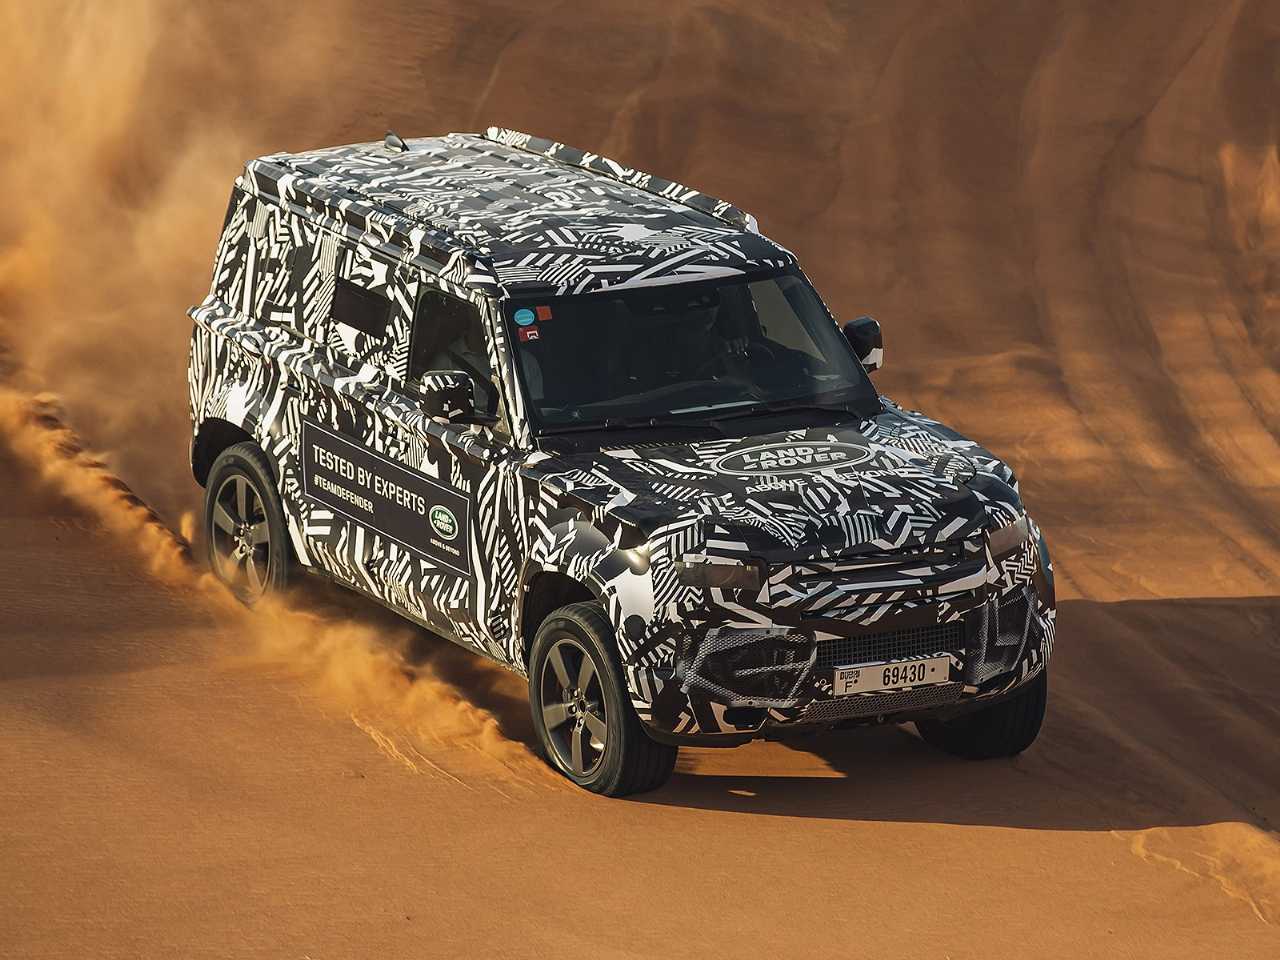 Novo Defender finalizando testes: visual pode inspirar o futuro SUV de entrada da Land Rover